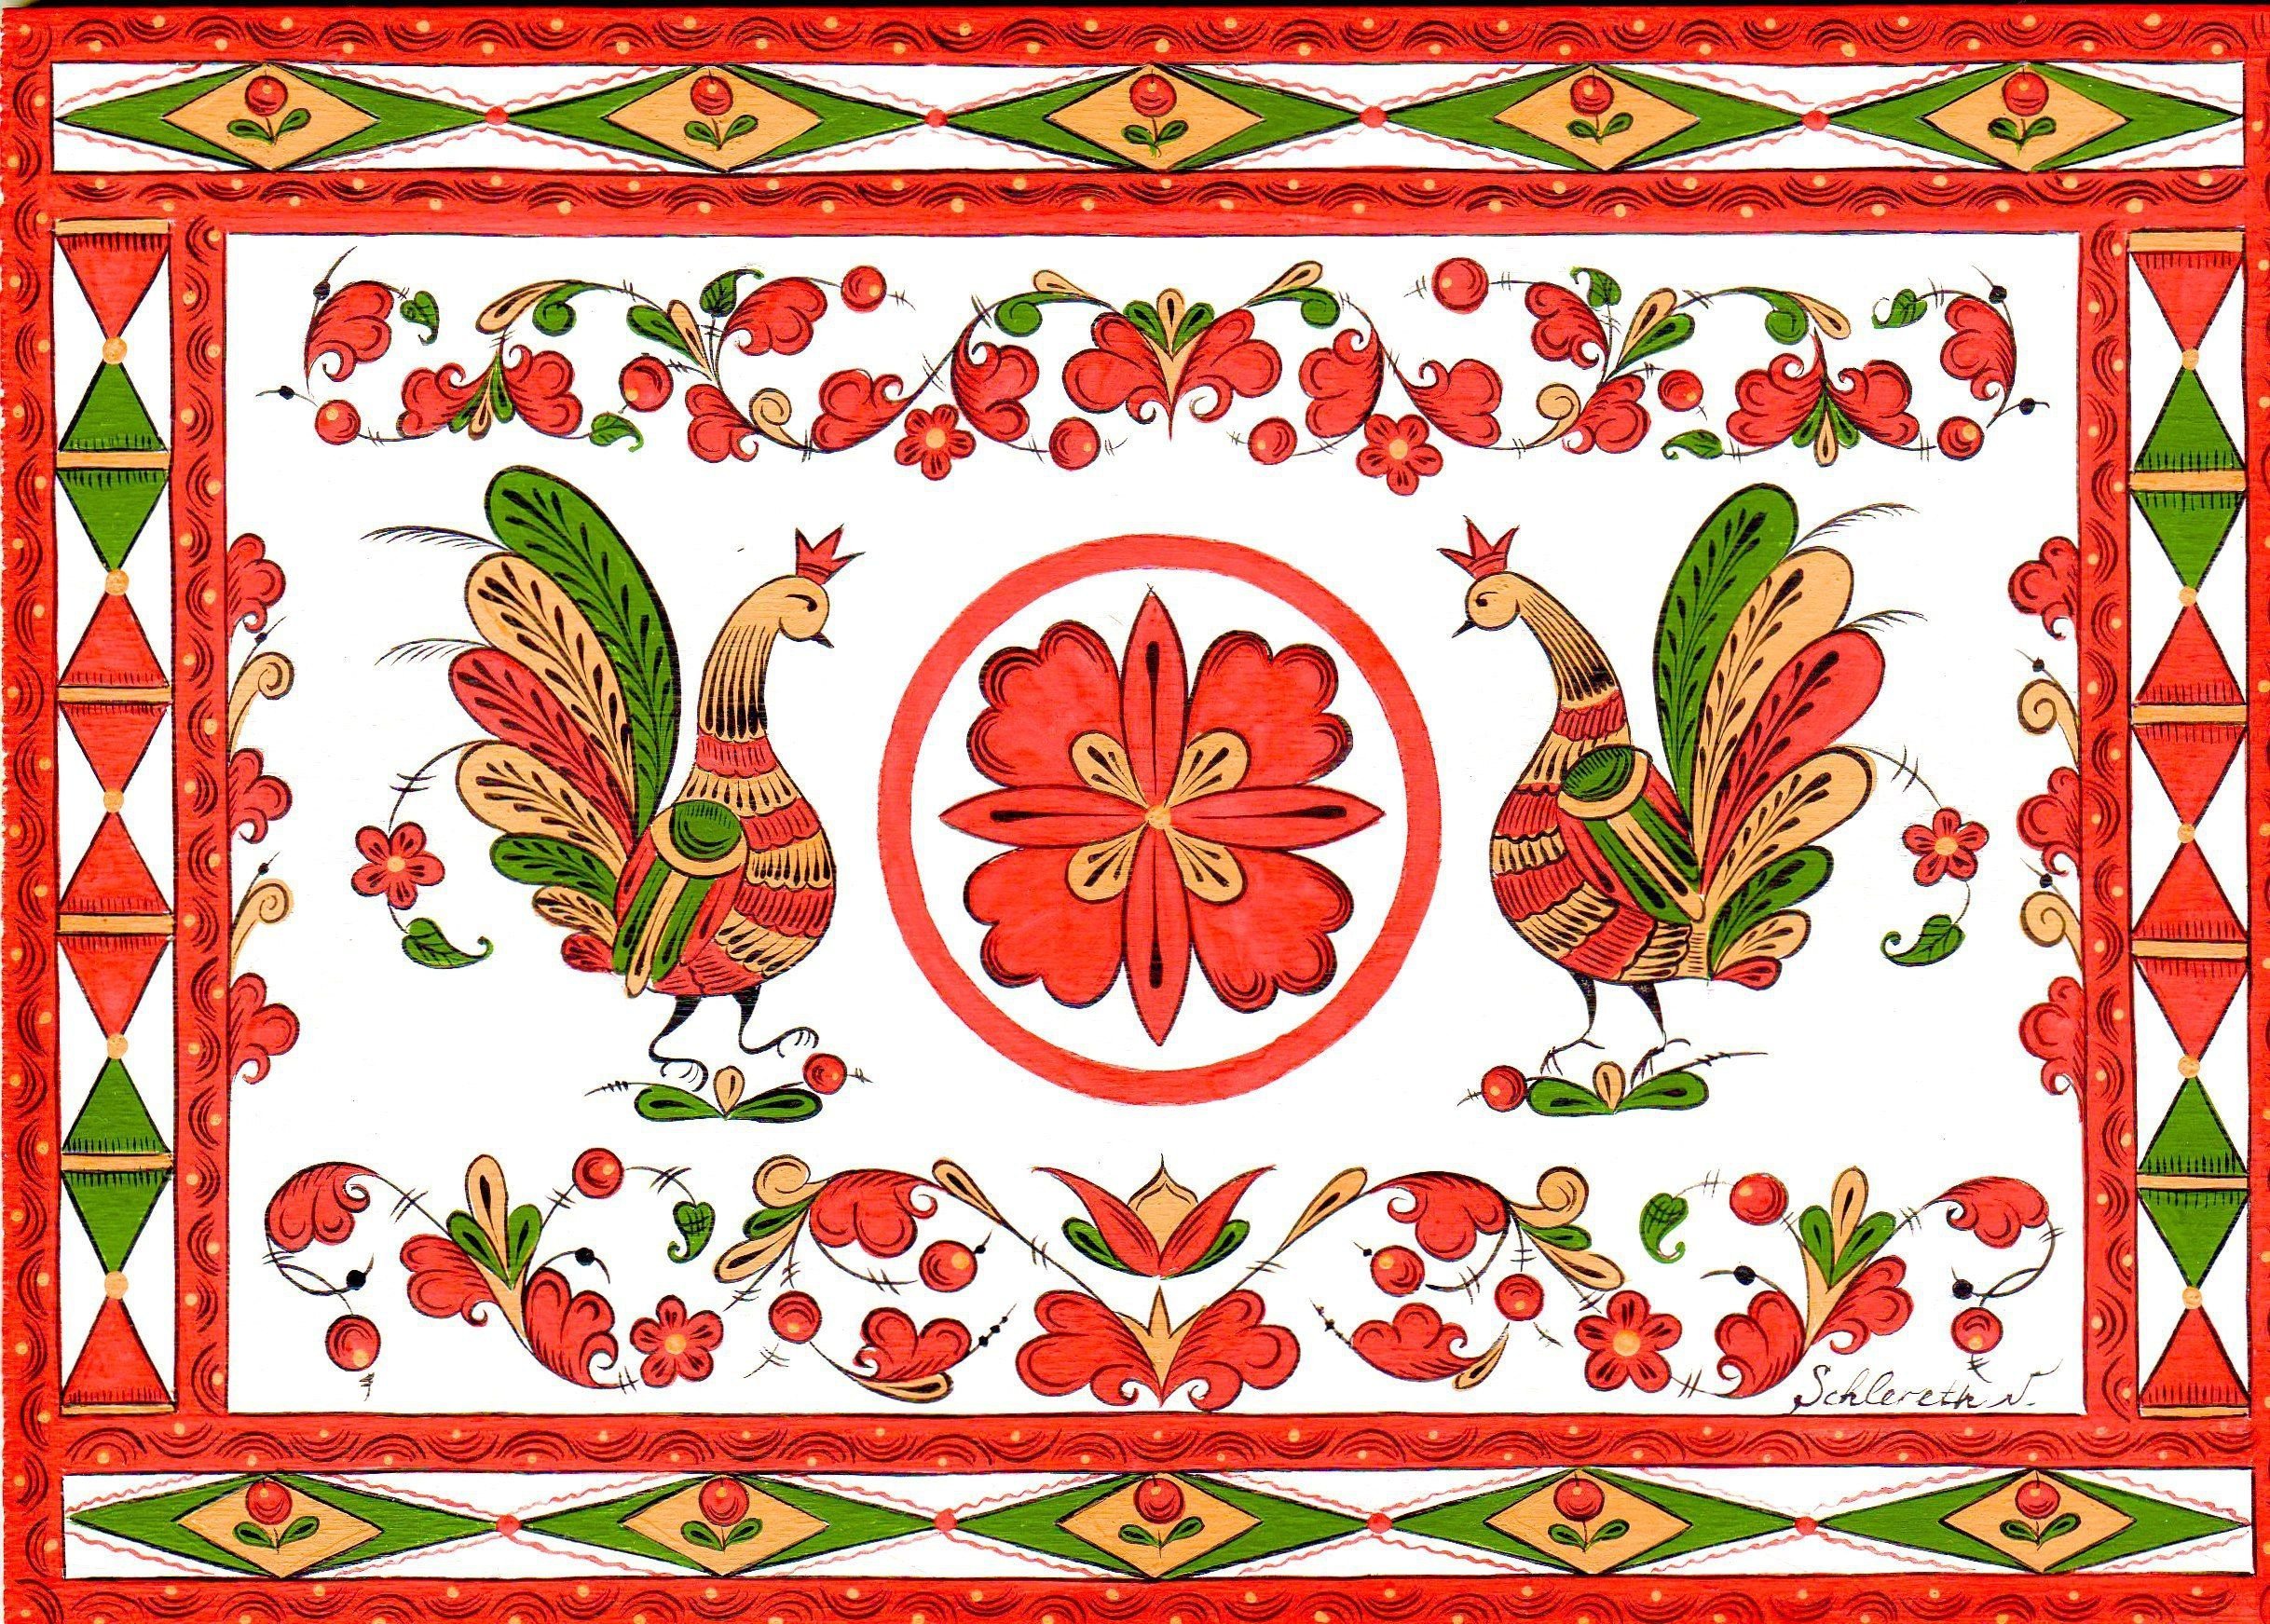 Борецкая и пермогорская роспись